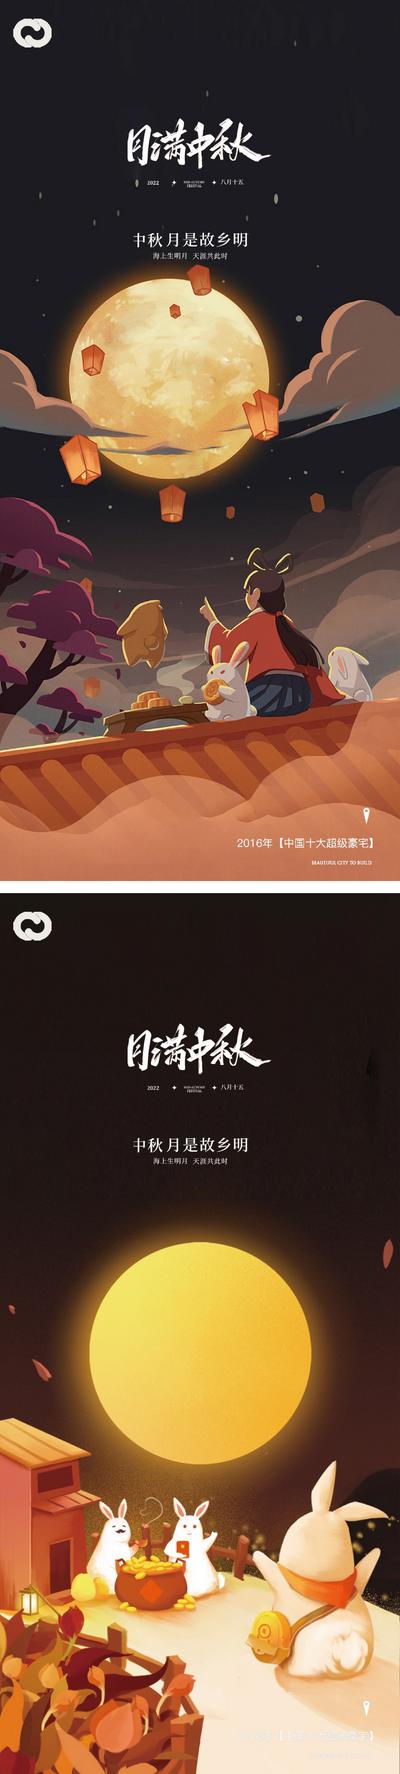 南门网 海报 中国传统节日 中秋节 月饼 插画 月亮 兔子